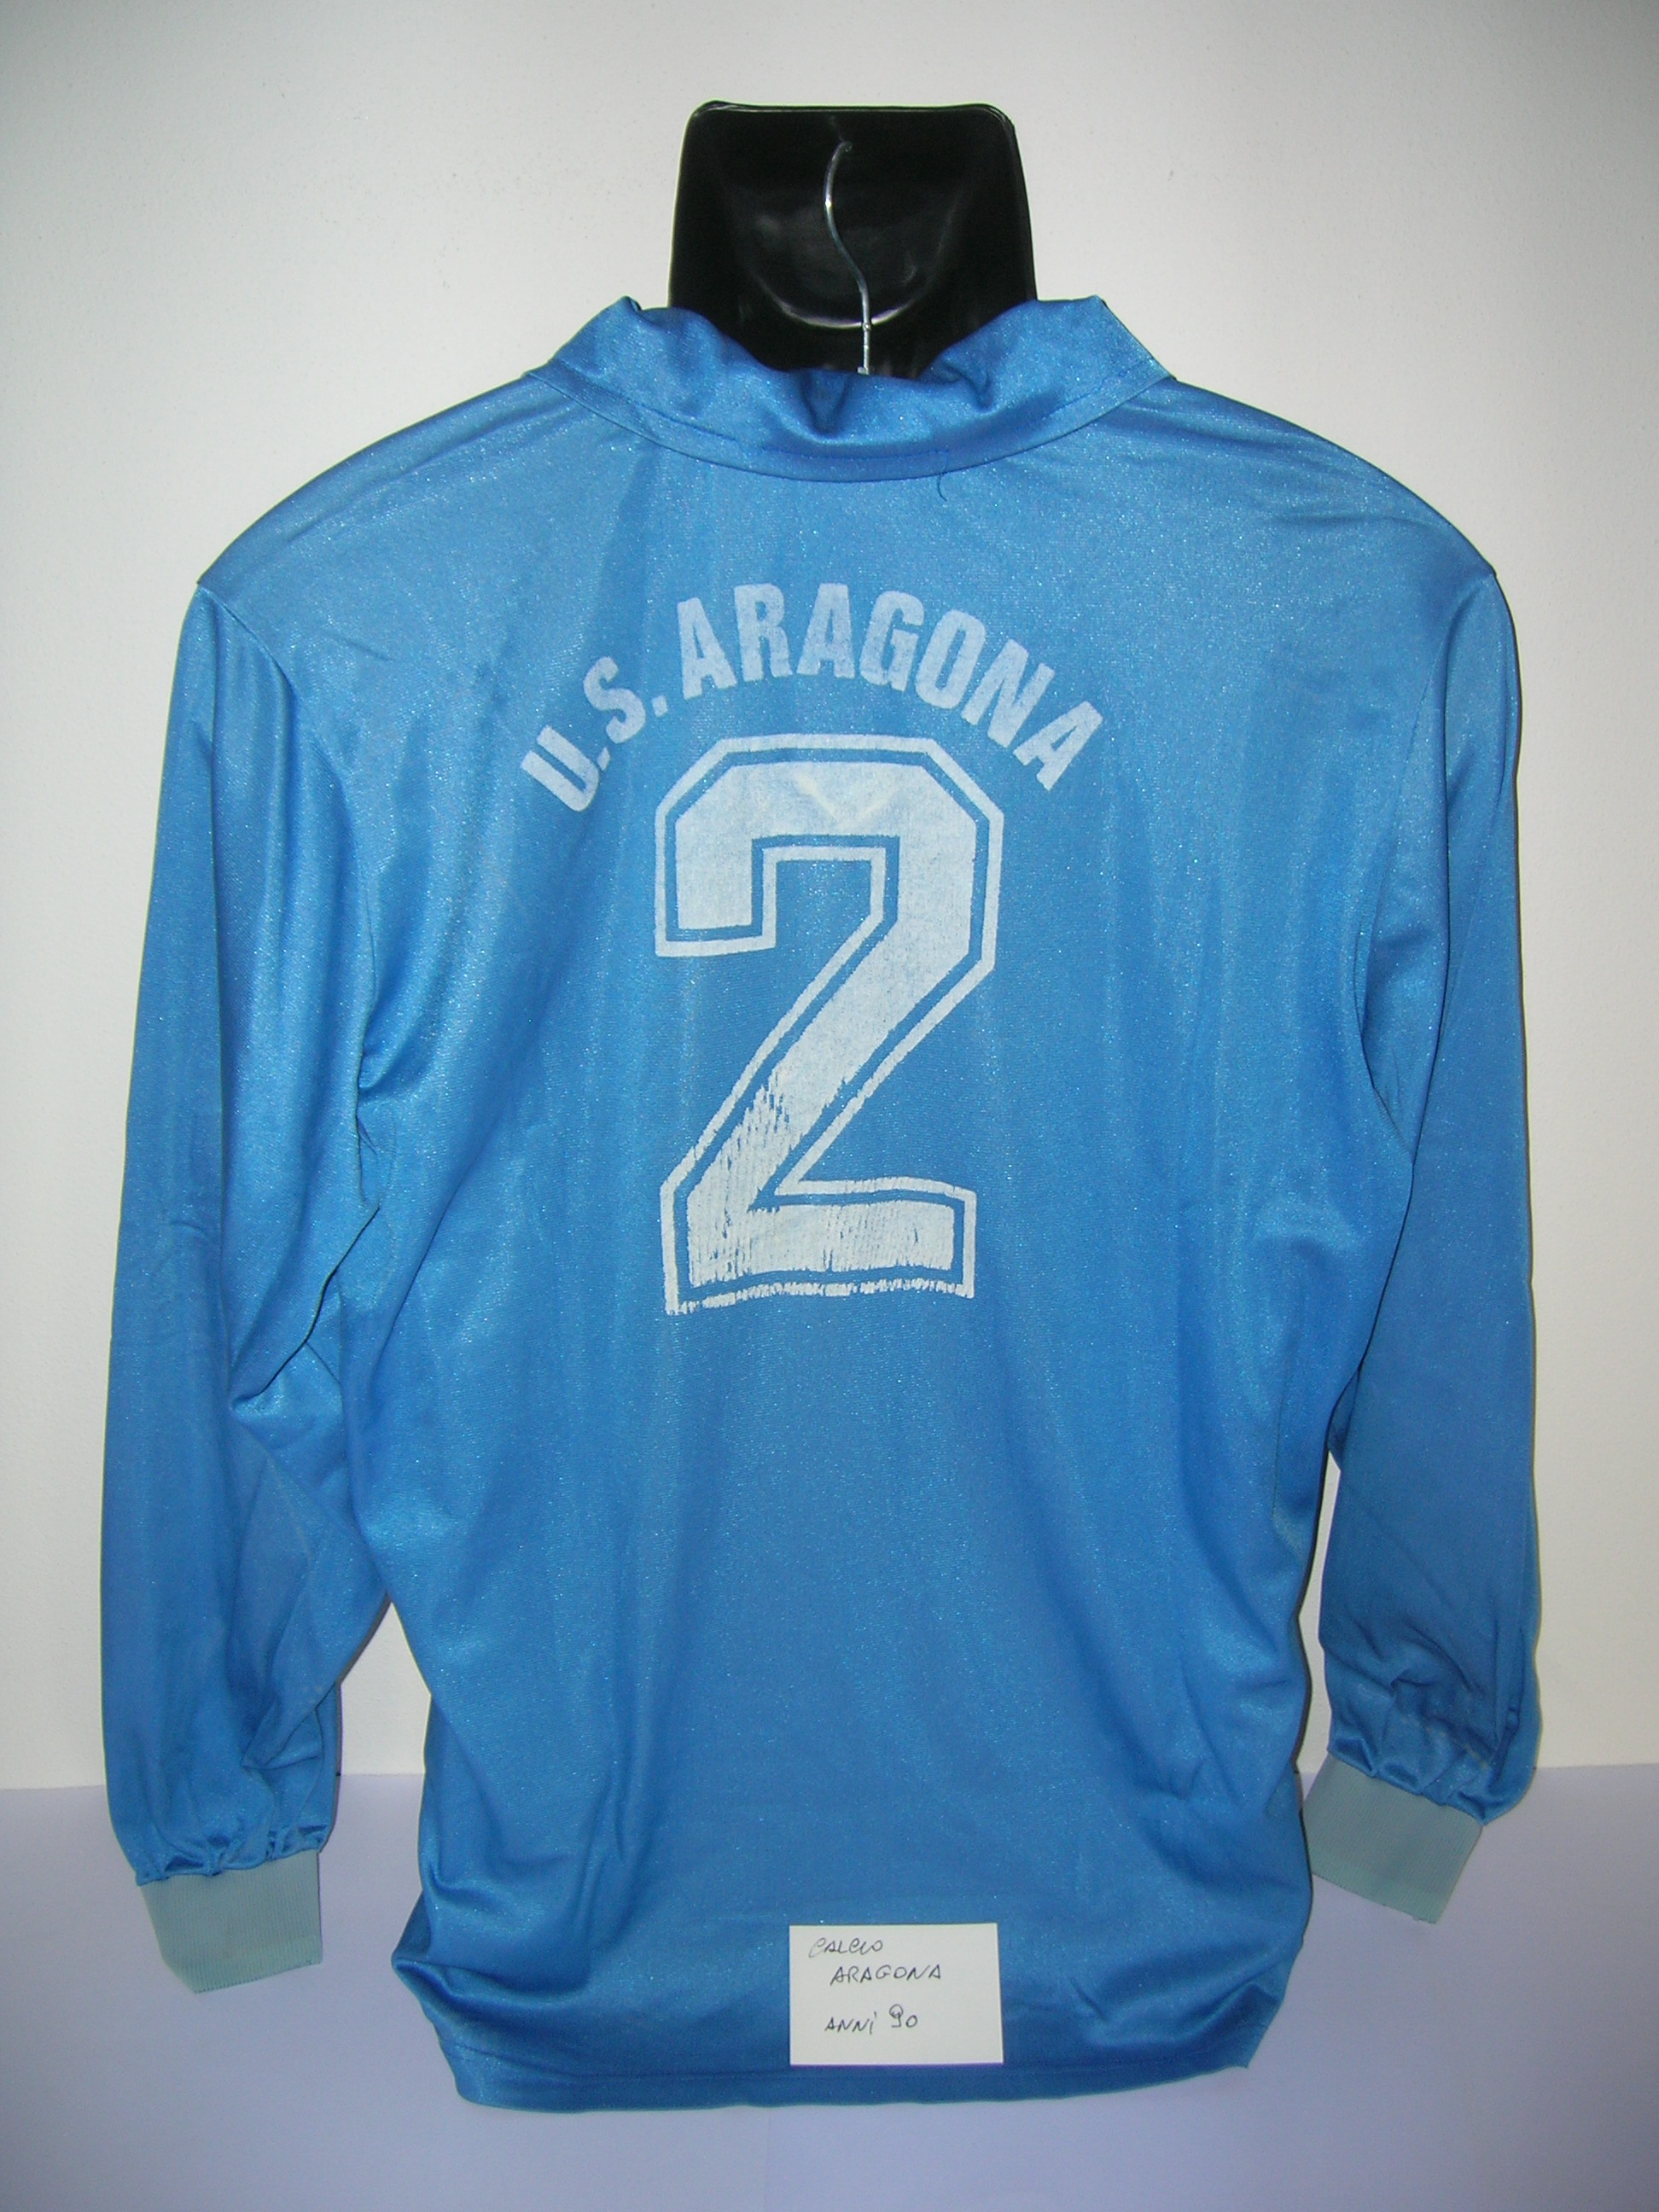 Aragona  US. calcio   anni 80-90   X2